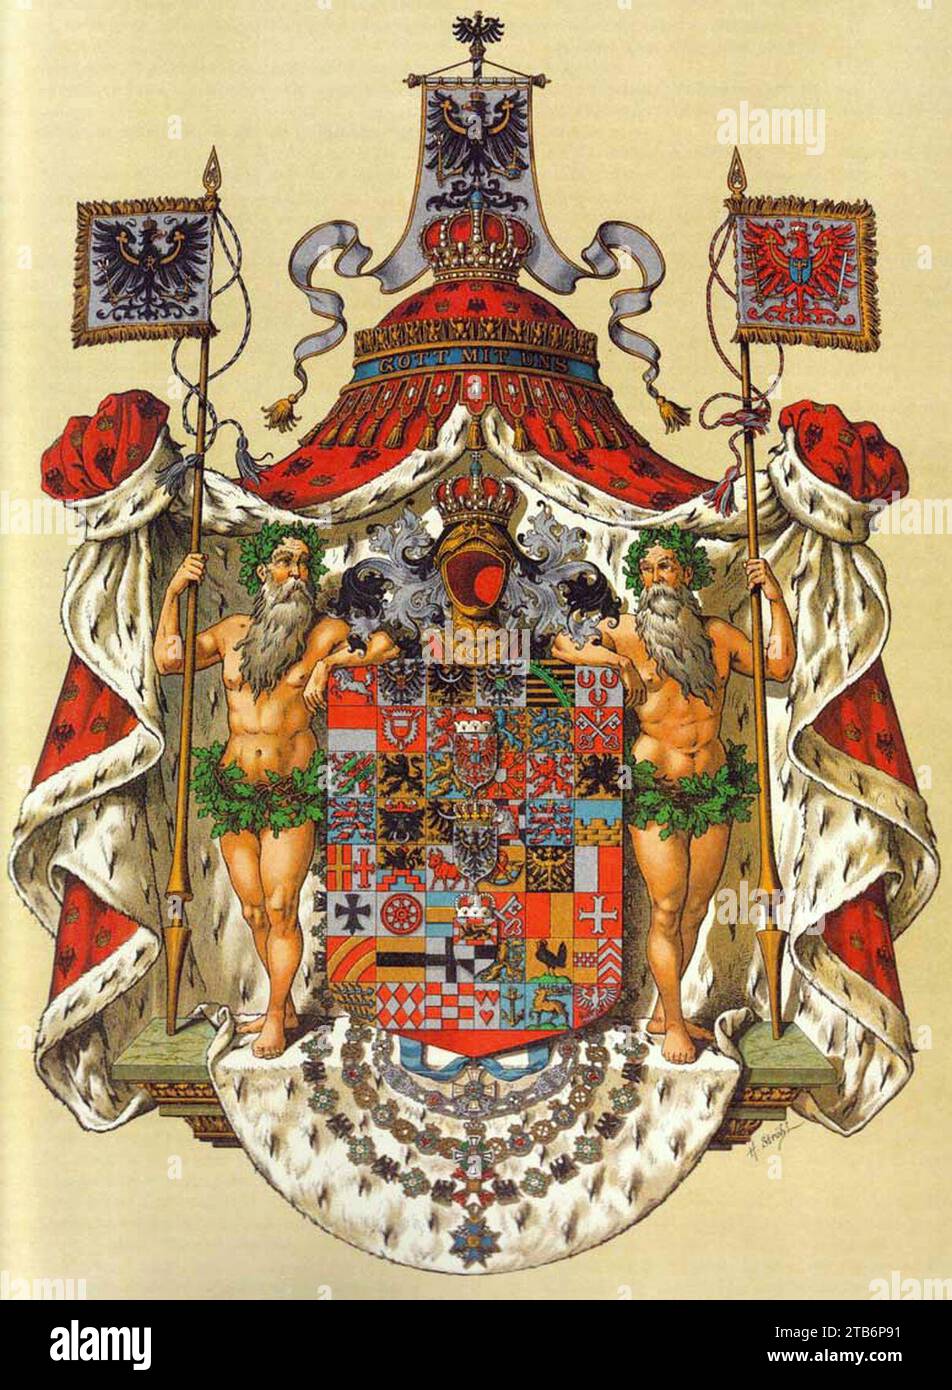 Wappen Deutsches Reich - Königreich Preussen (Grosses). Stock Photo